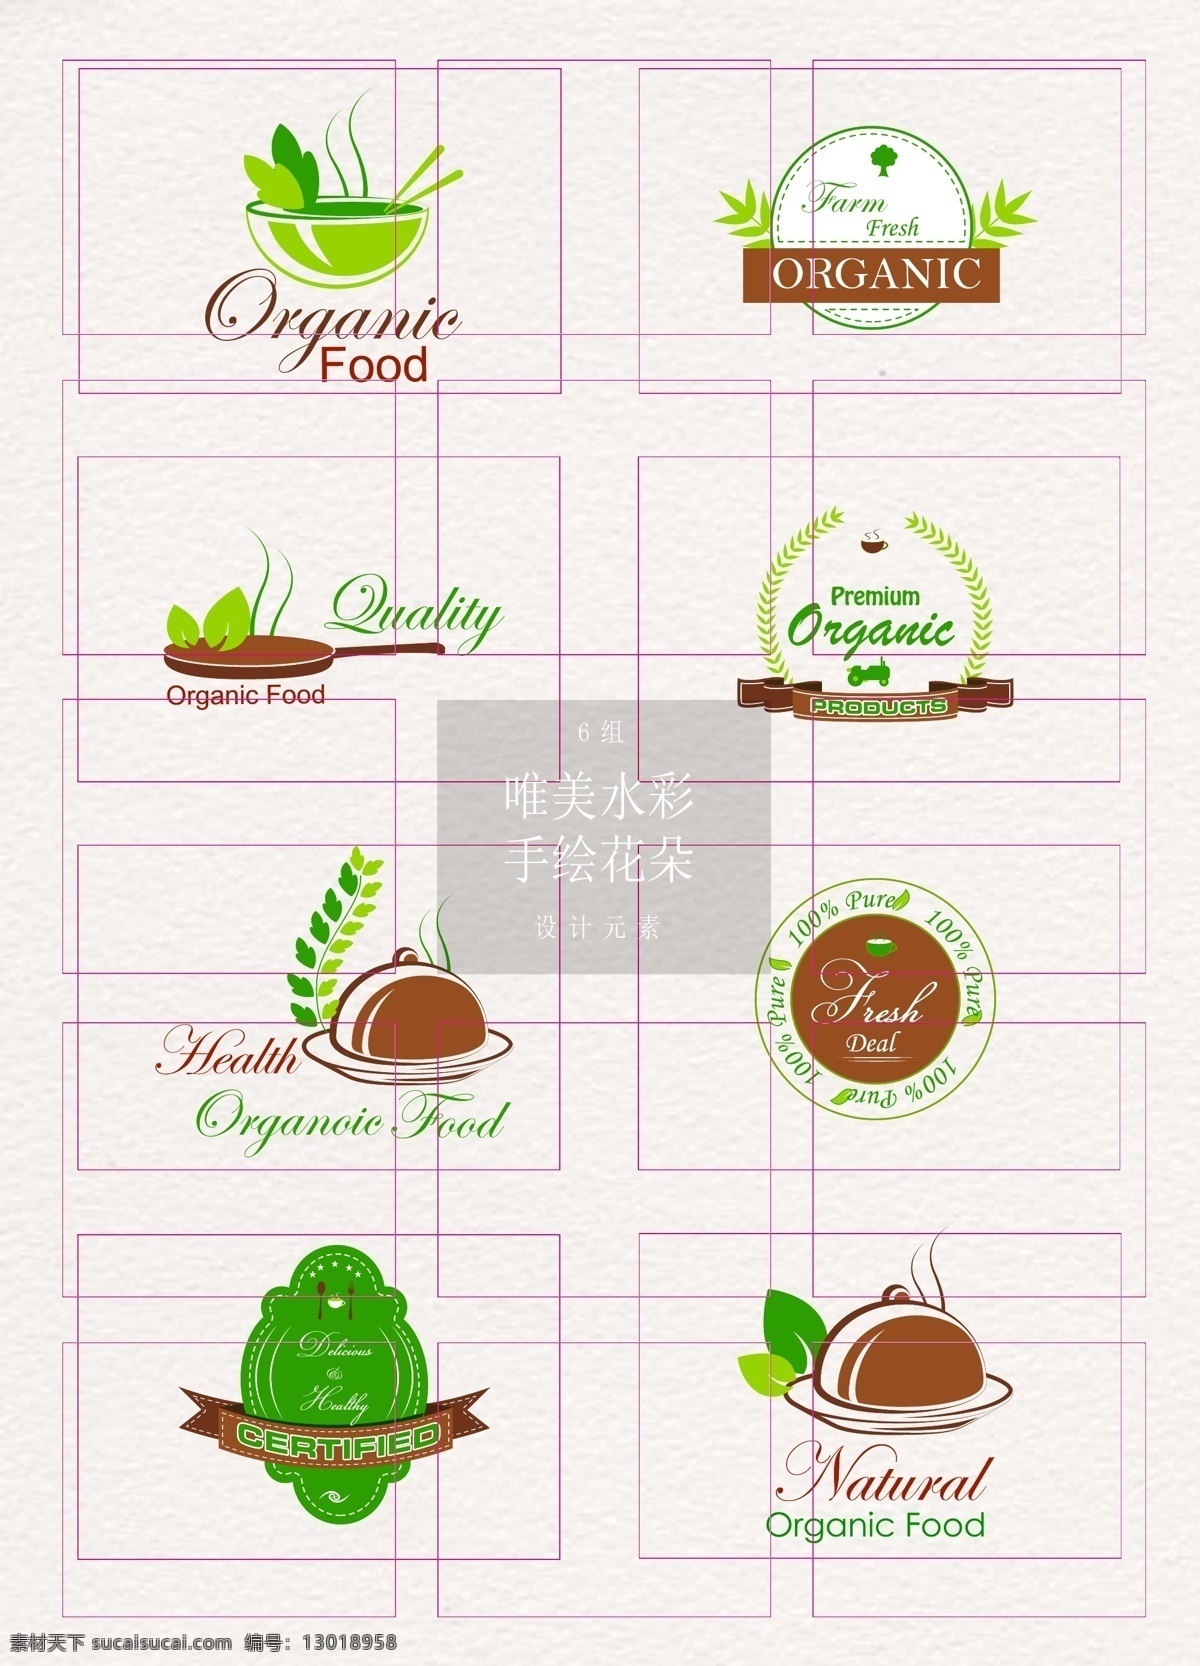 彩色 有机 食品 简约 标签 有机食品 矢量图标 标志设计 标签图片 贴纸标签 有机食物 天然食品